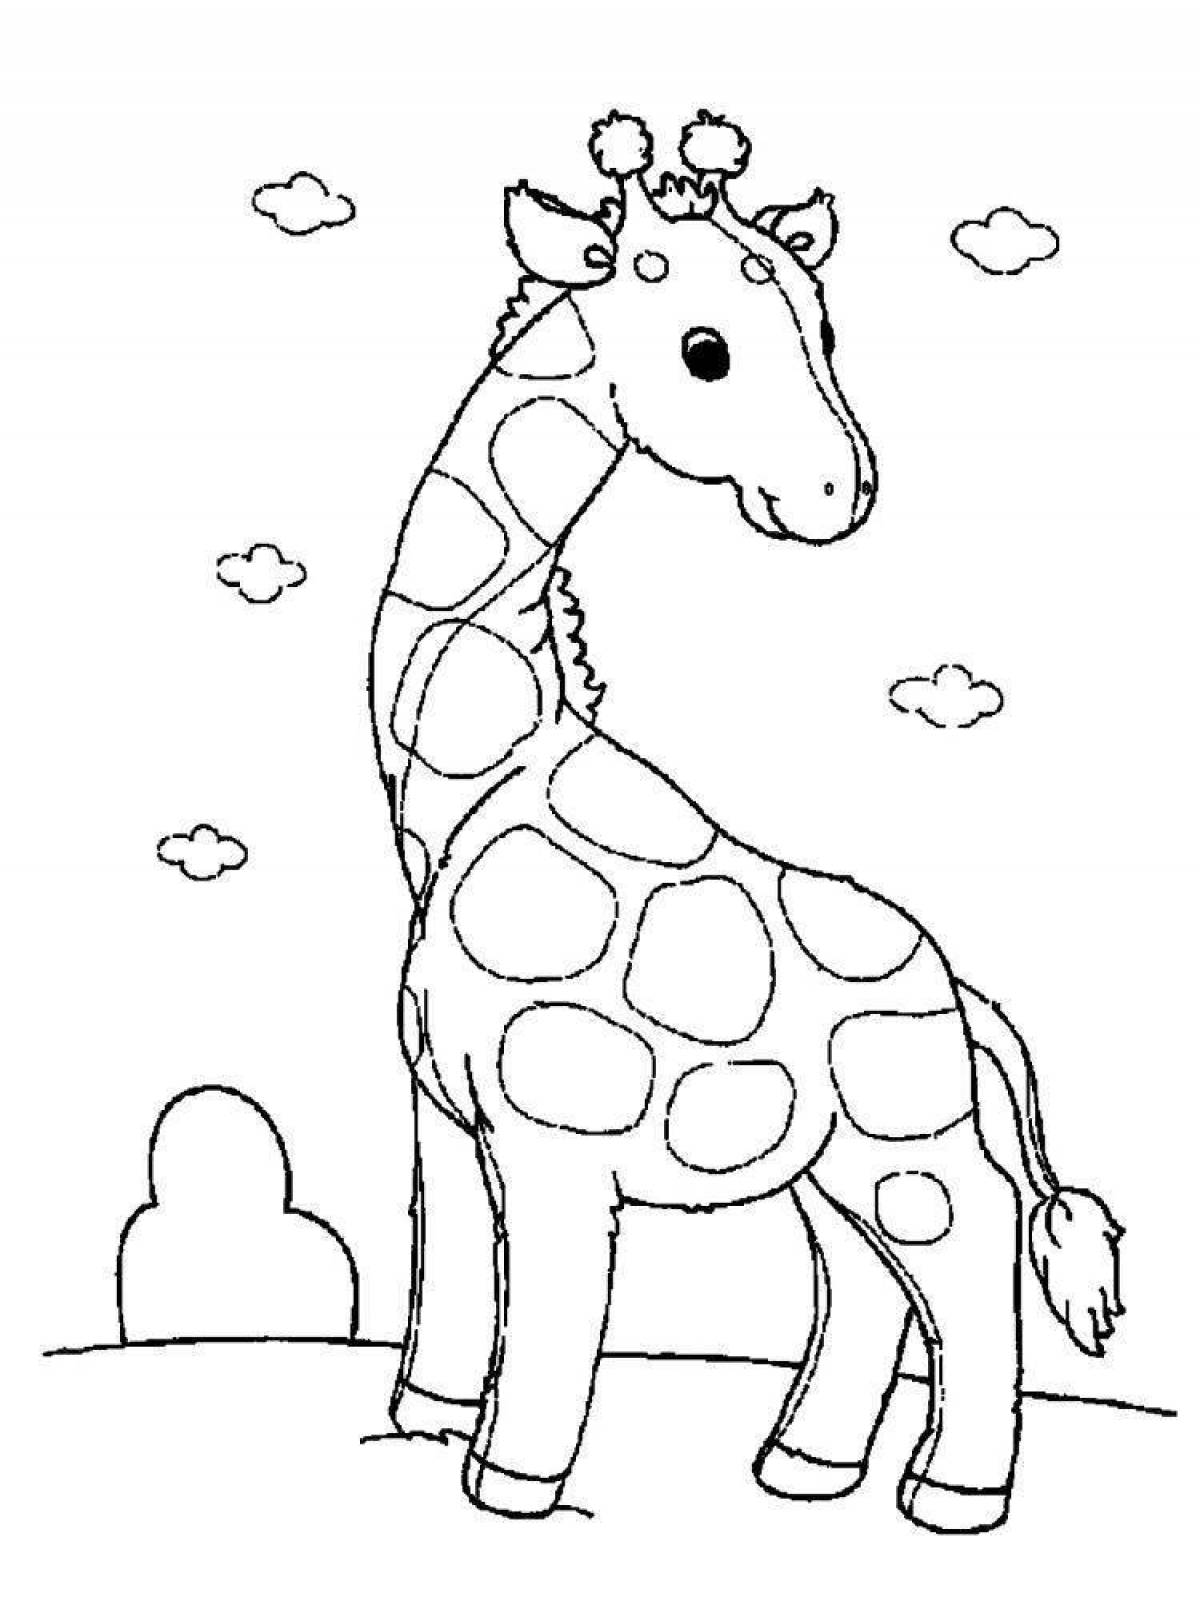 Милая раскраска жираф для детей 3-4 лет